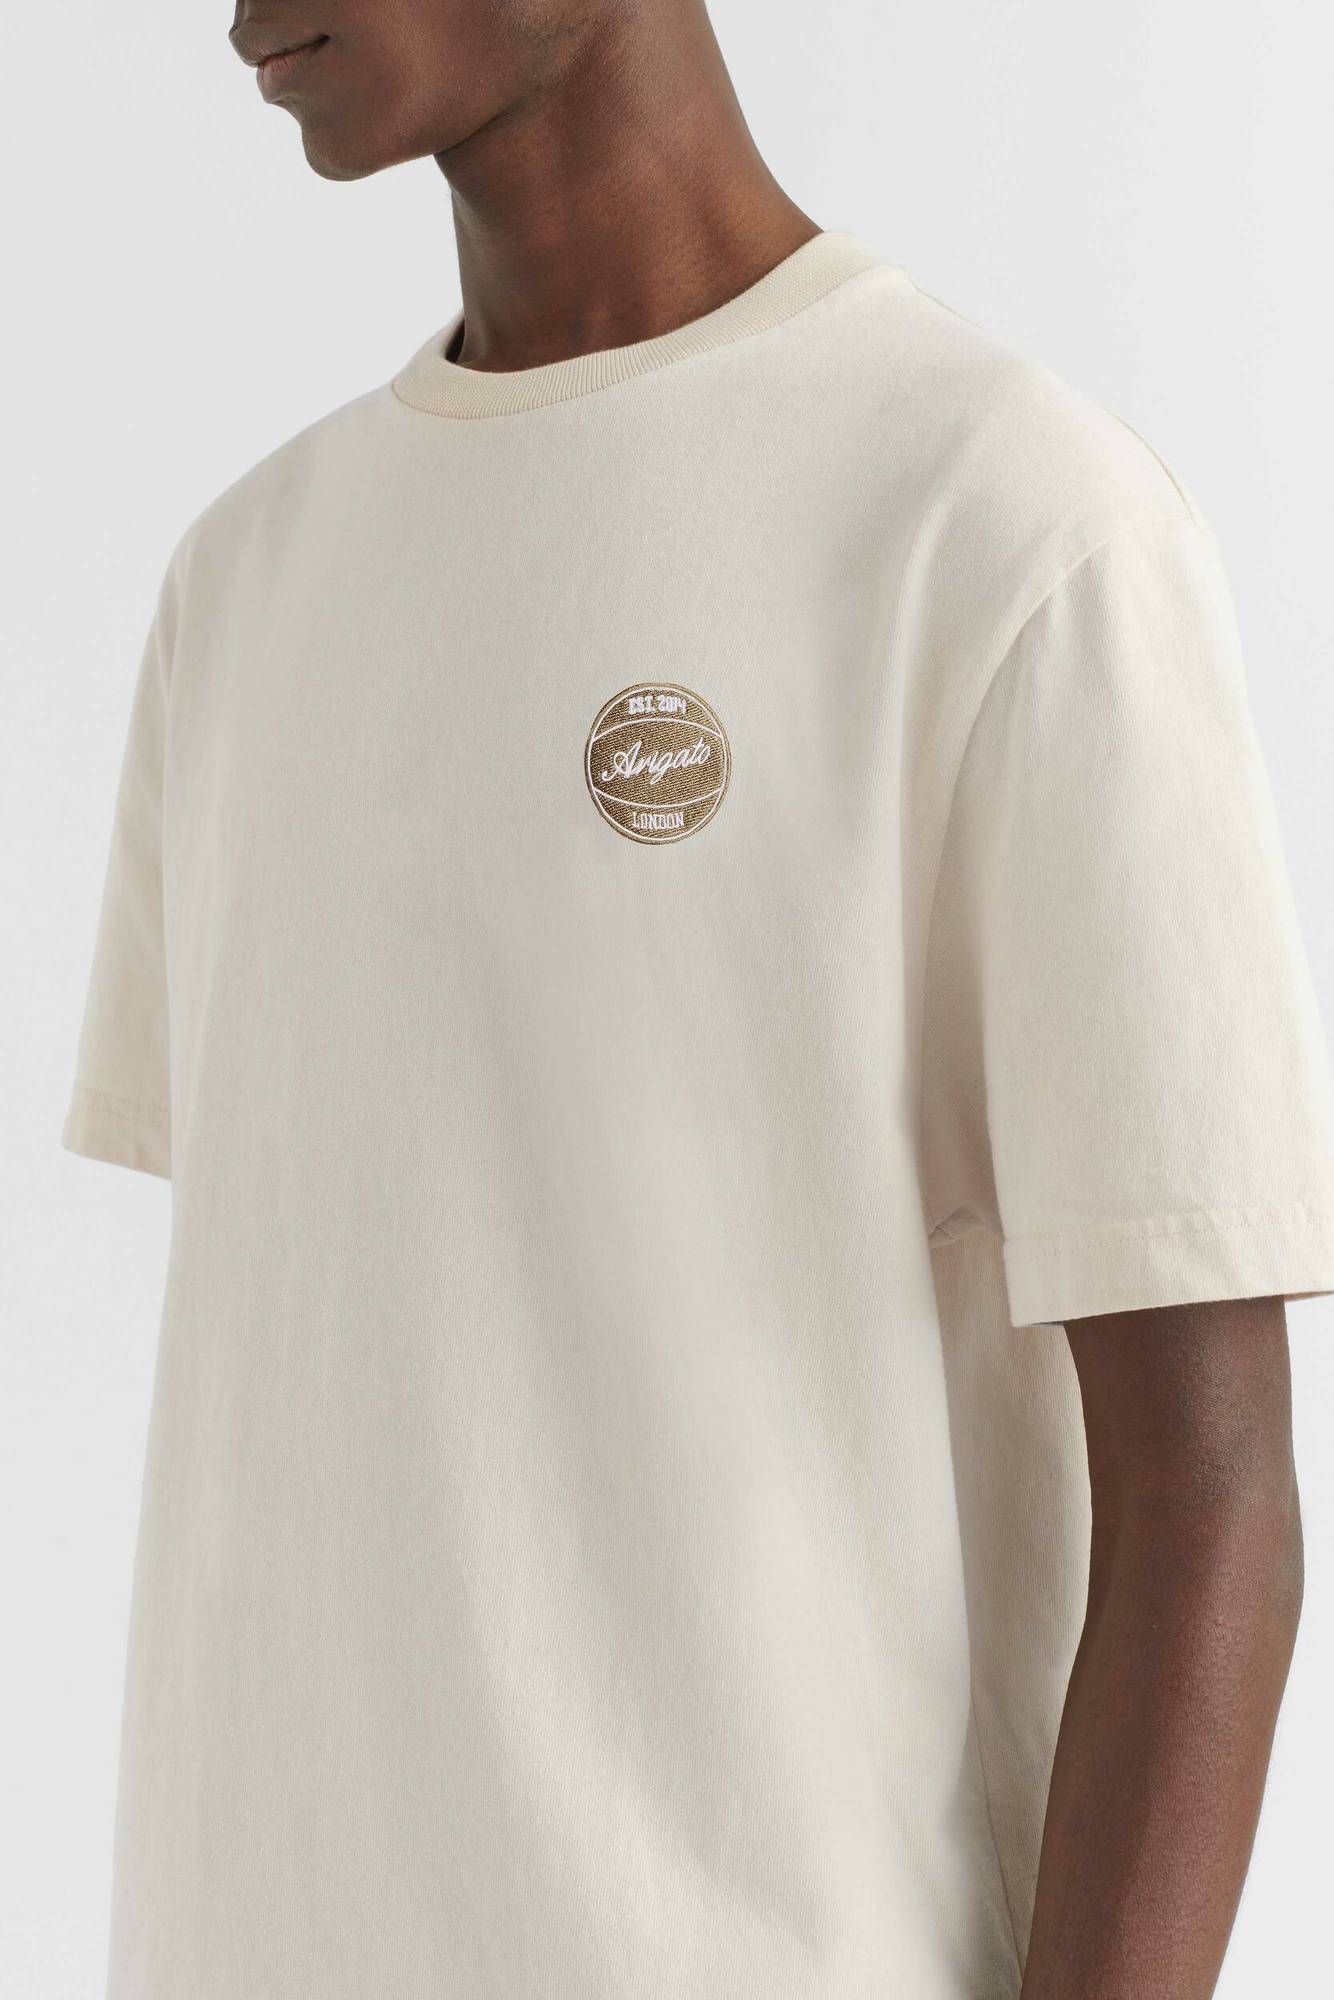 AXEL ARIGATO - Dunk T-Shirt